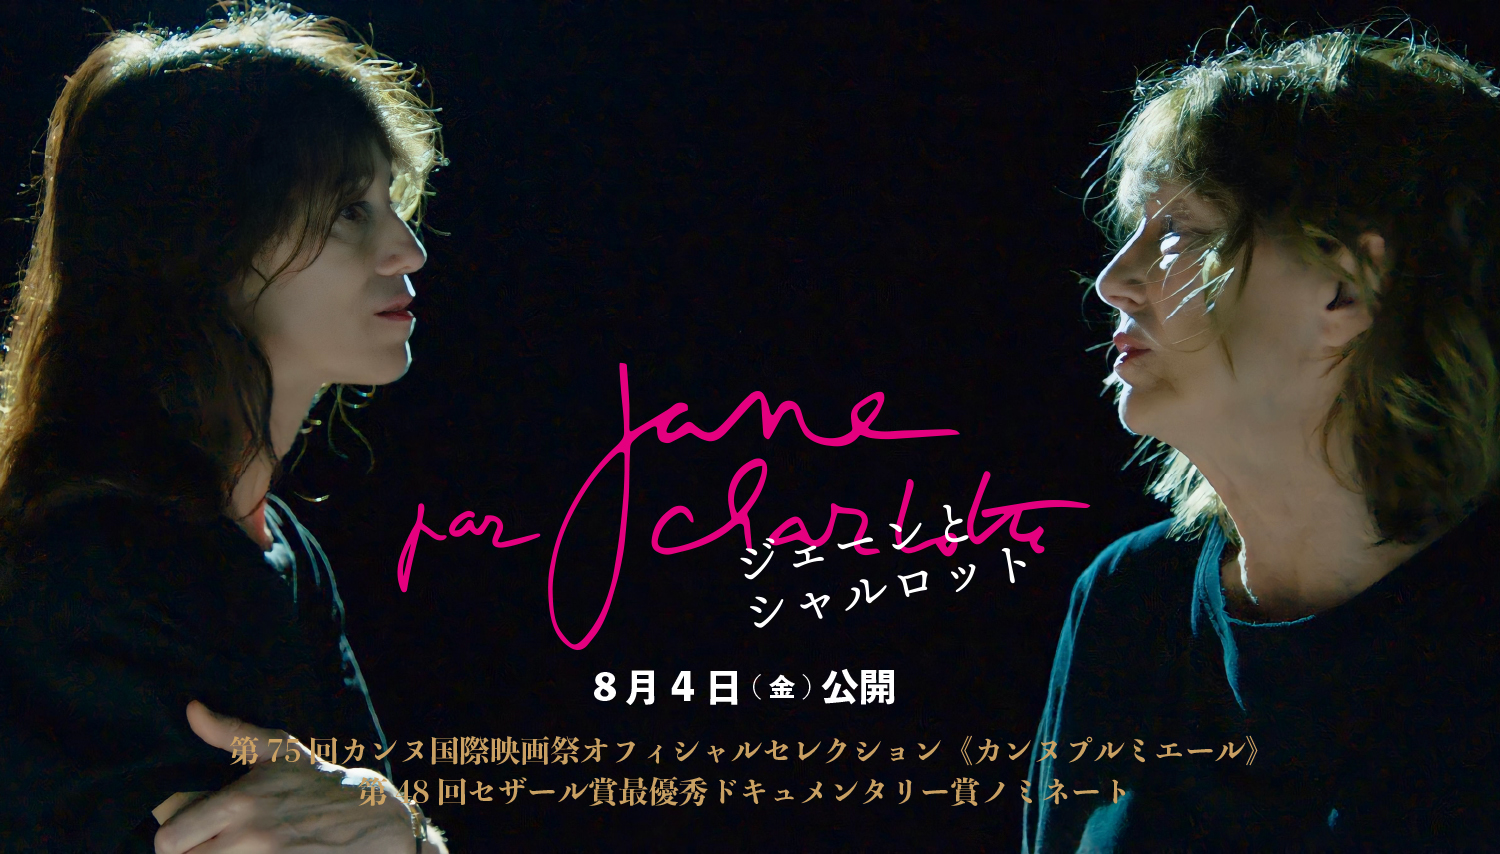 agnès b. Shibuya 映画『Jane par Charlotte』公開記念展示開催 